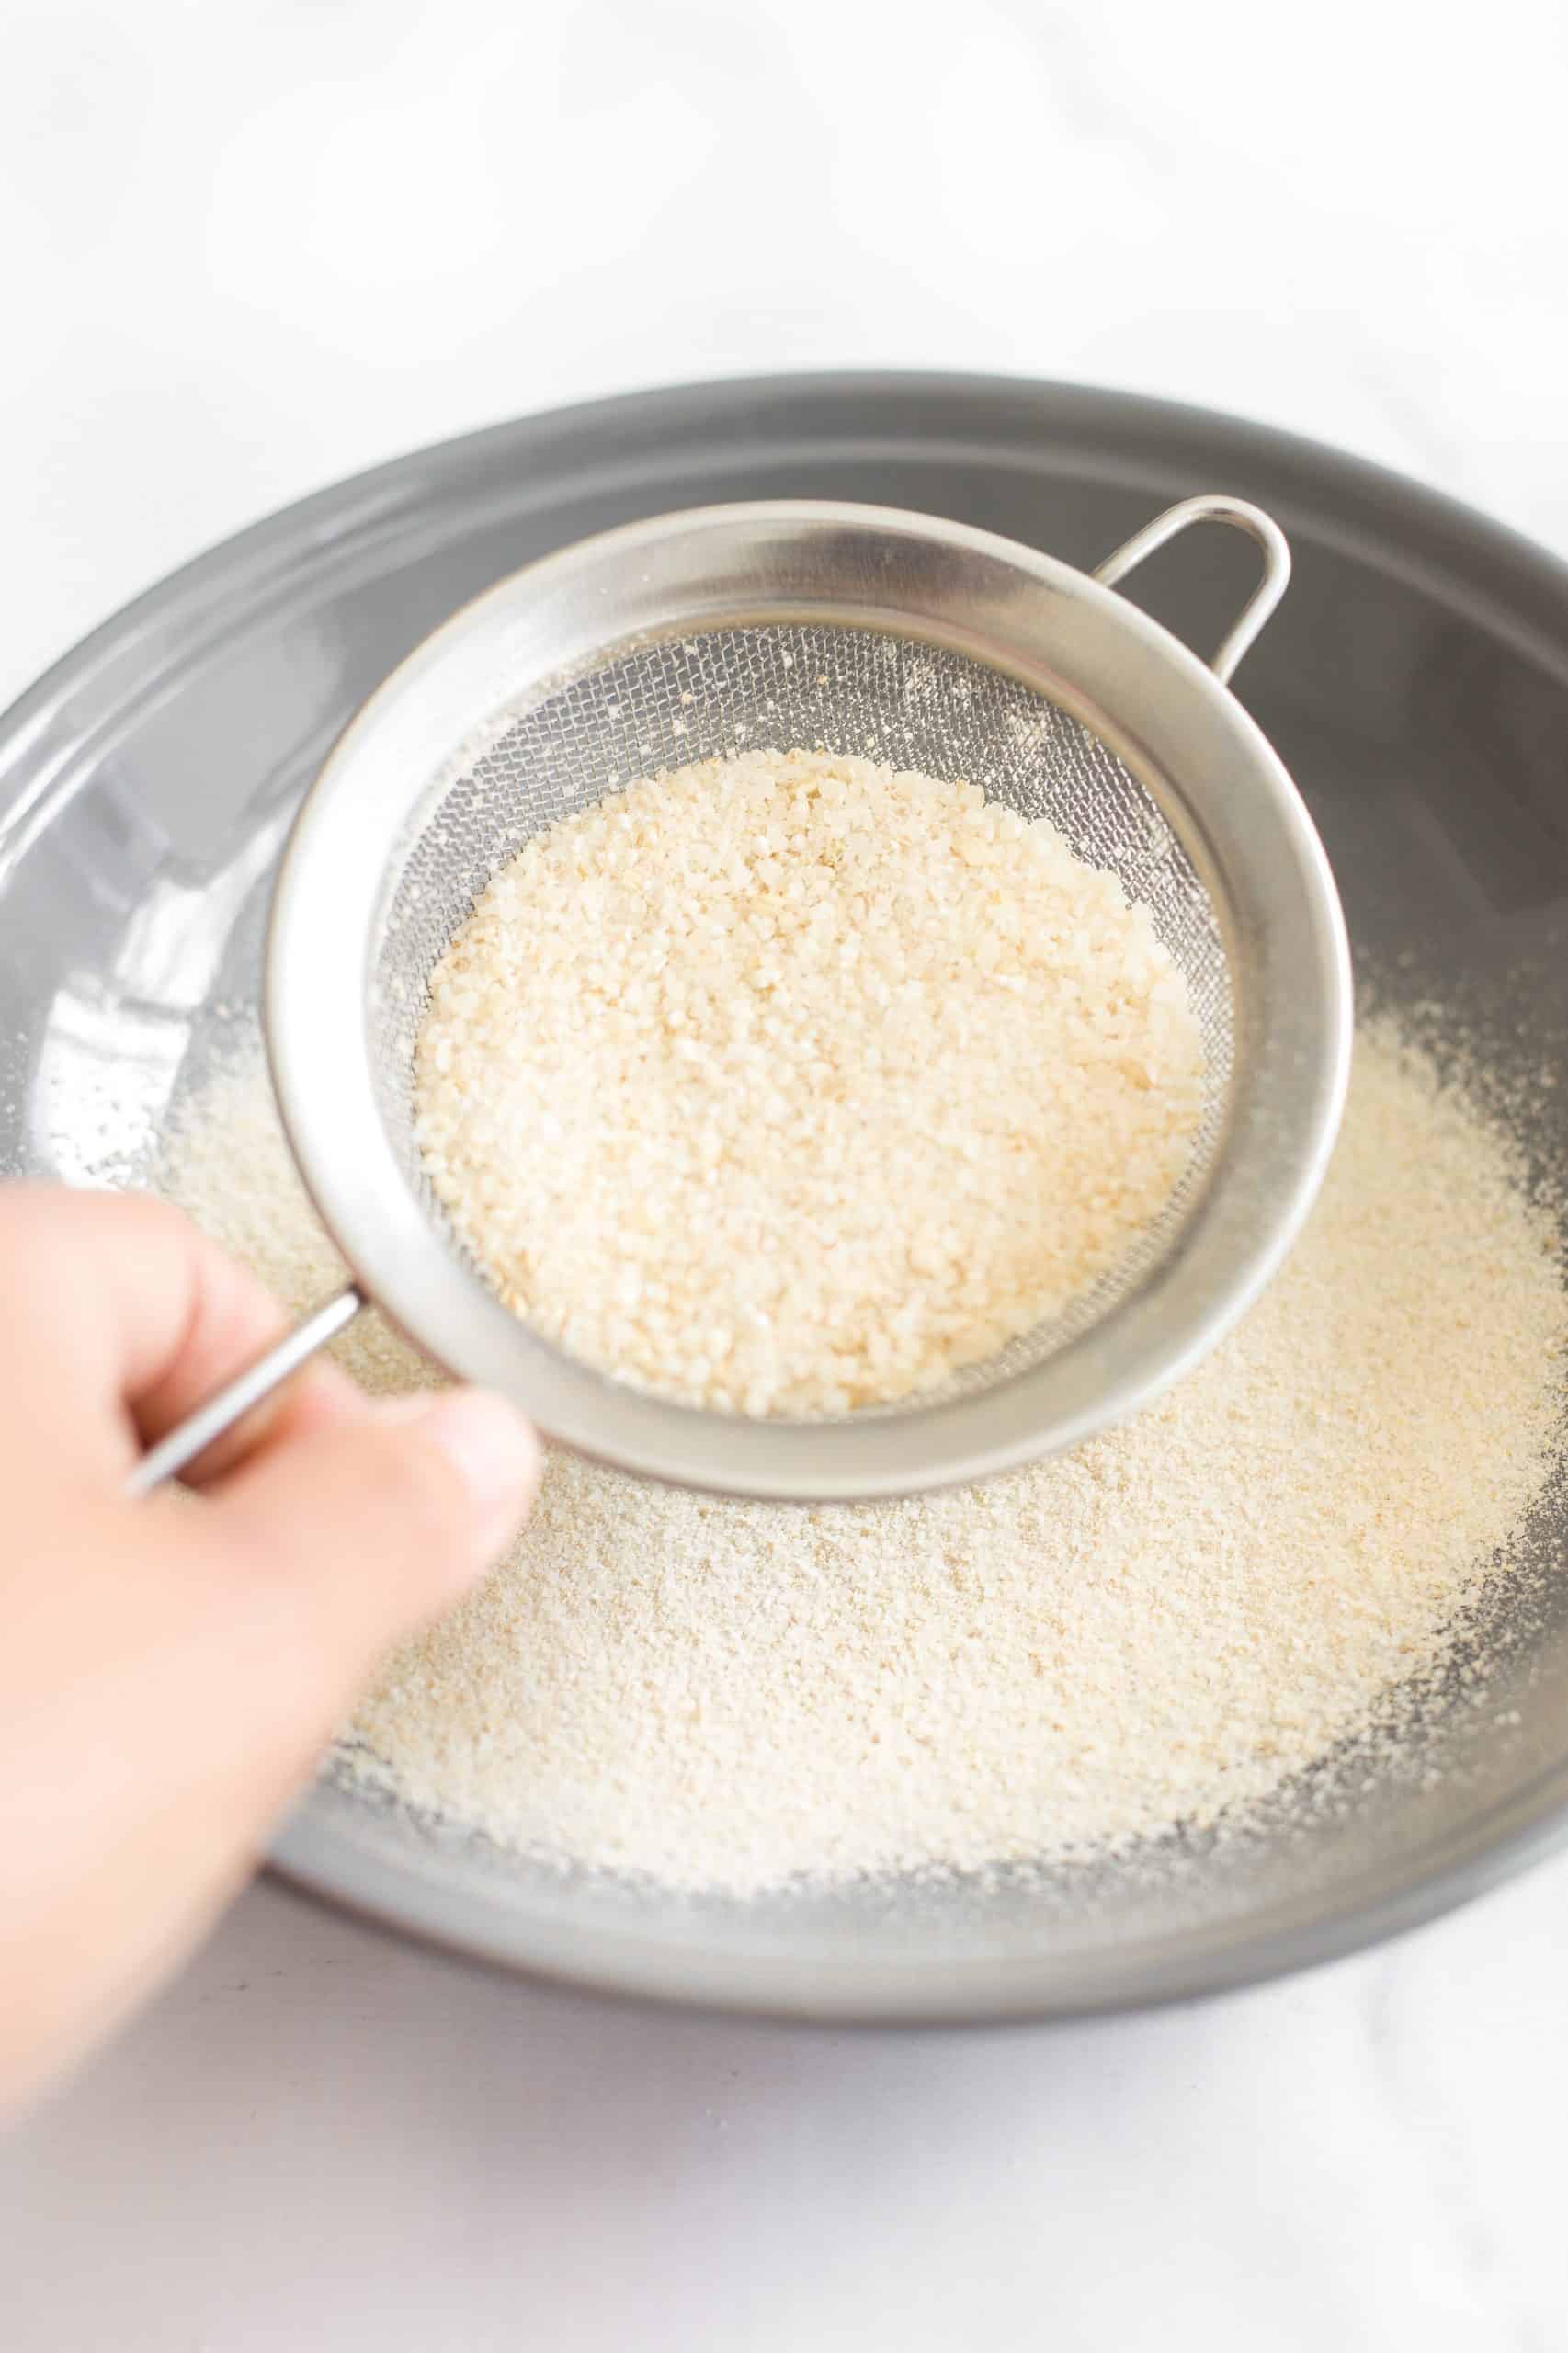 Sifting rice flour through a fine-mesh sieve.